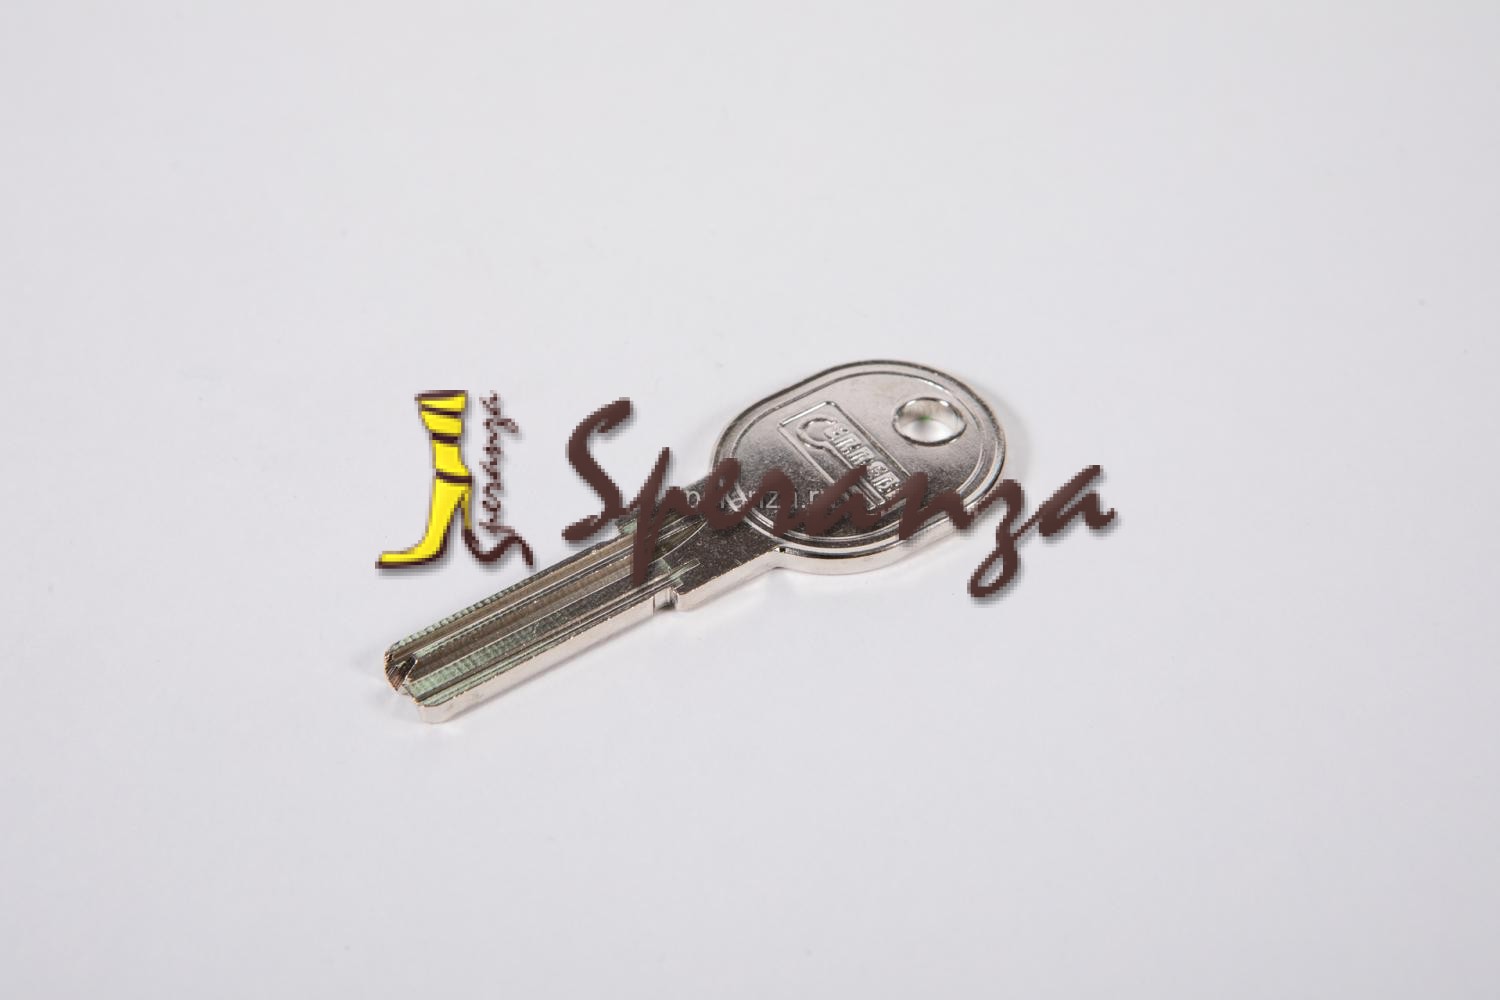 Ключ первый номер. Серьга (Загот) 1.7020.33.71.022.00. Обои с h1-Key с ситалла.